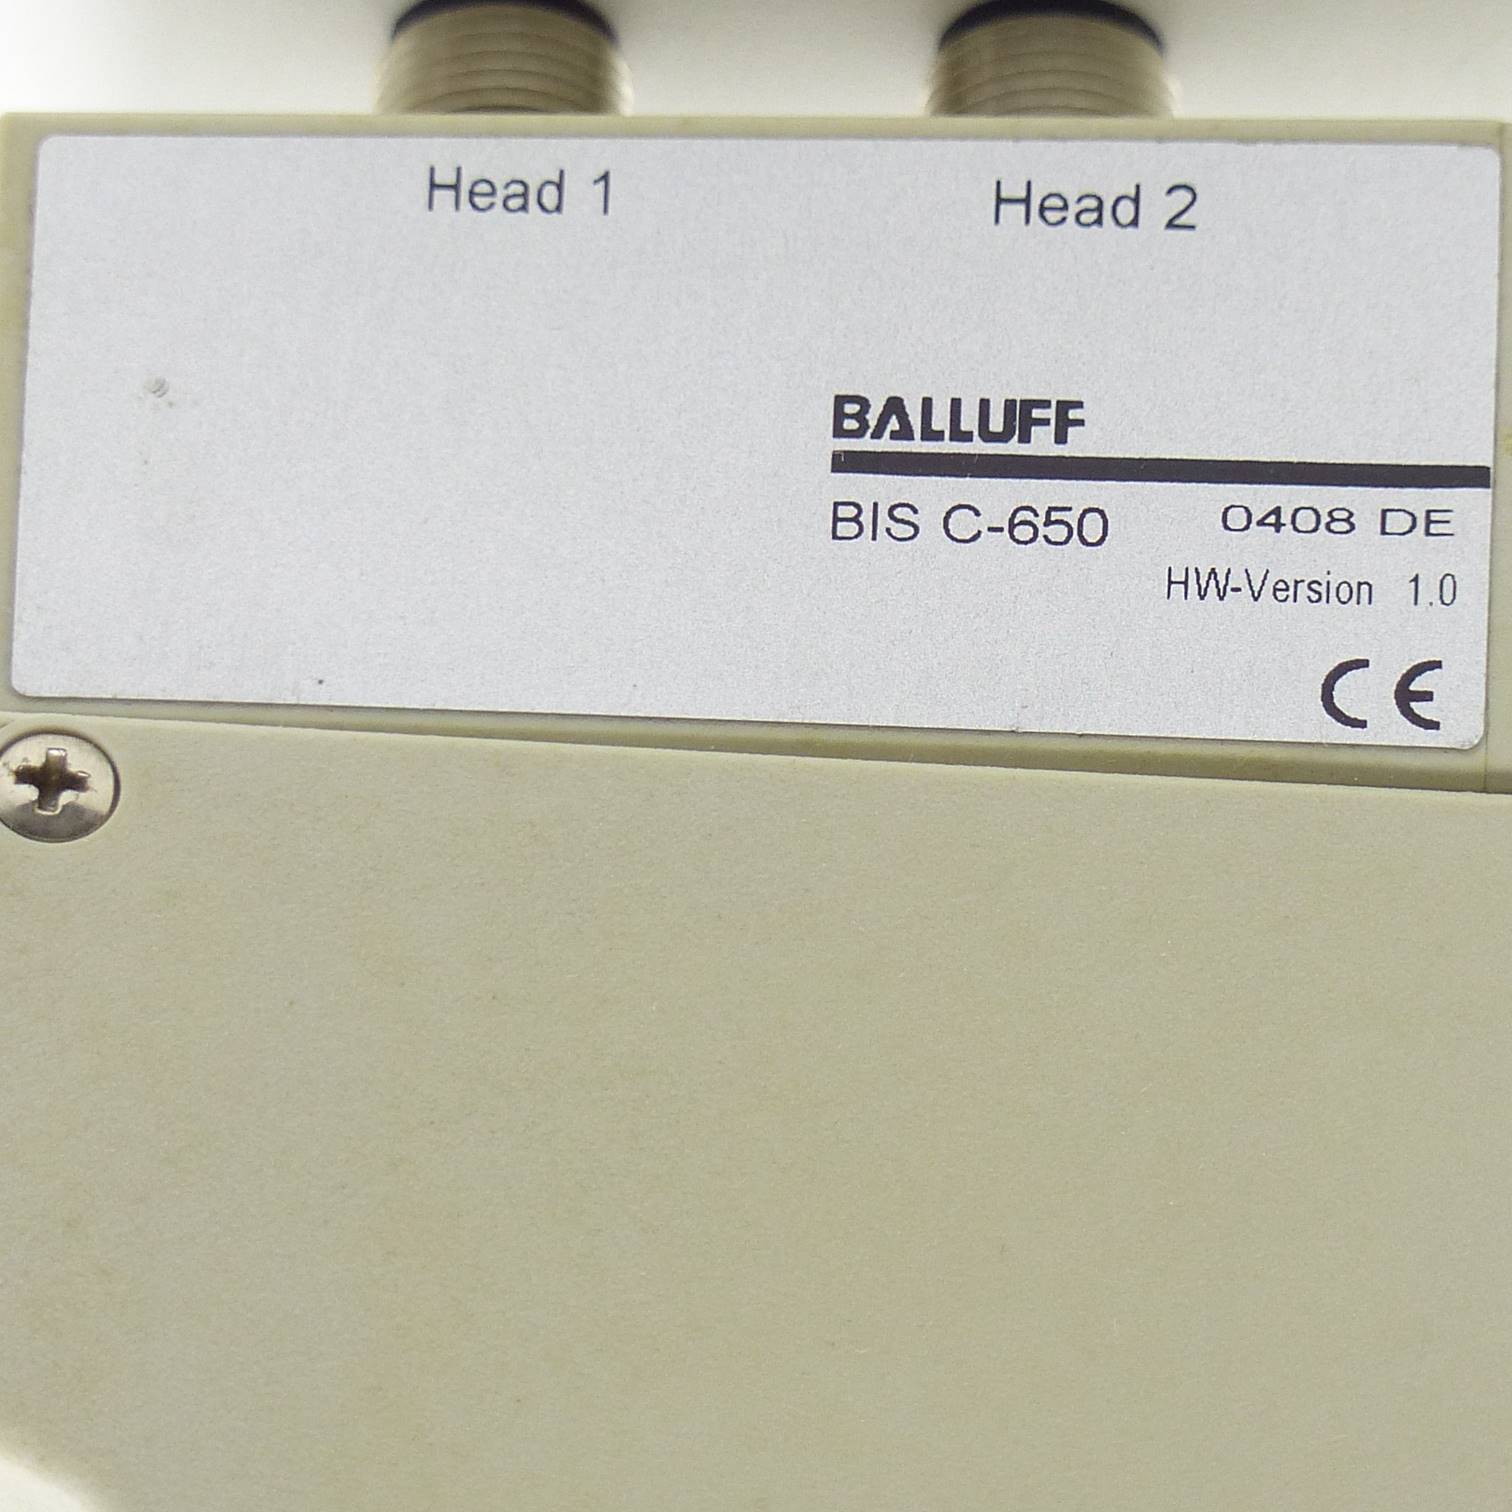 Identification System BIS C-650 